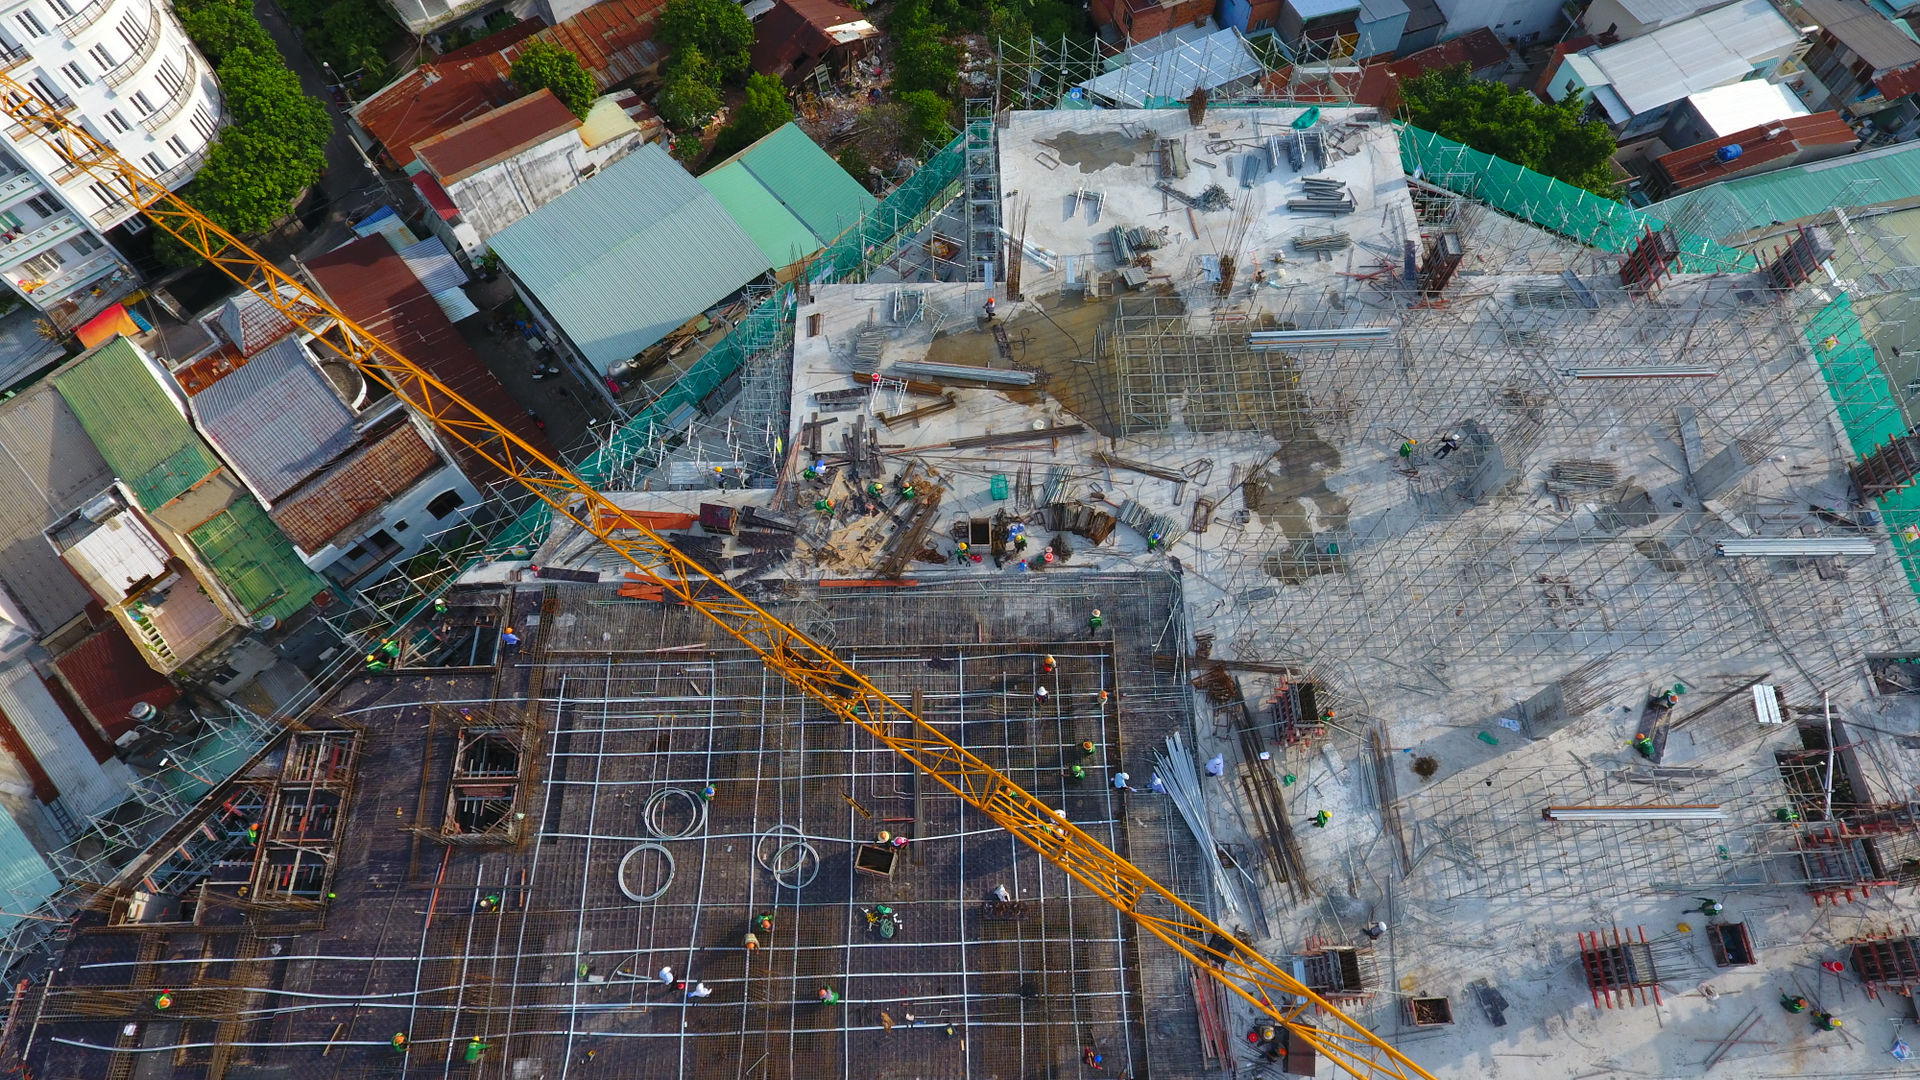 Dự án Trung tâm thương mại đầu tiên của TTC Land tại Sài Gòn hiện đang thi công đến đâu?